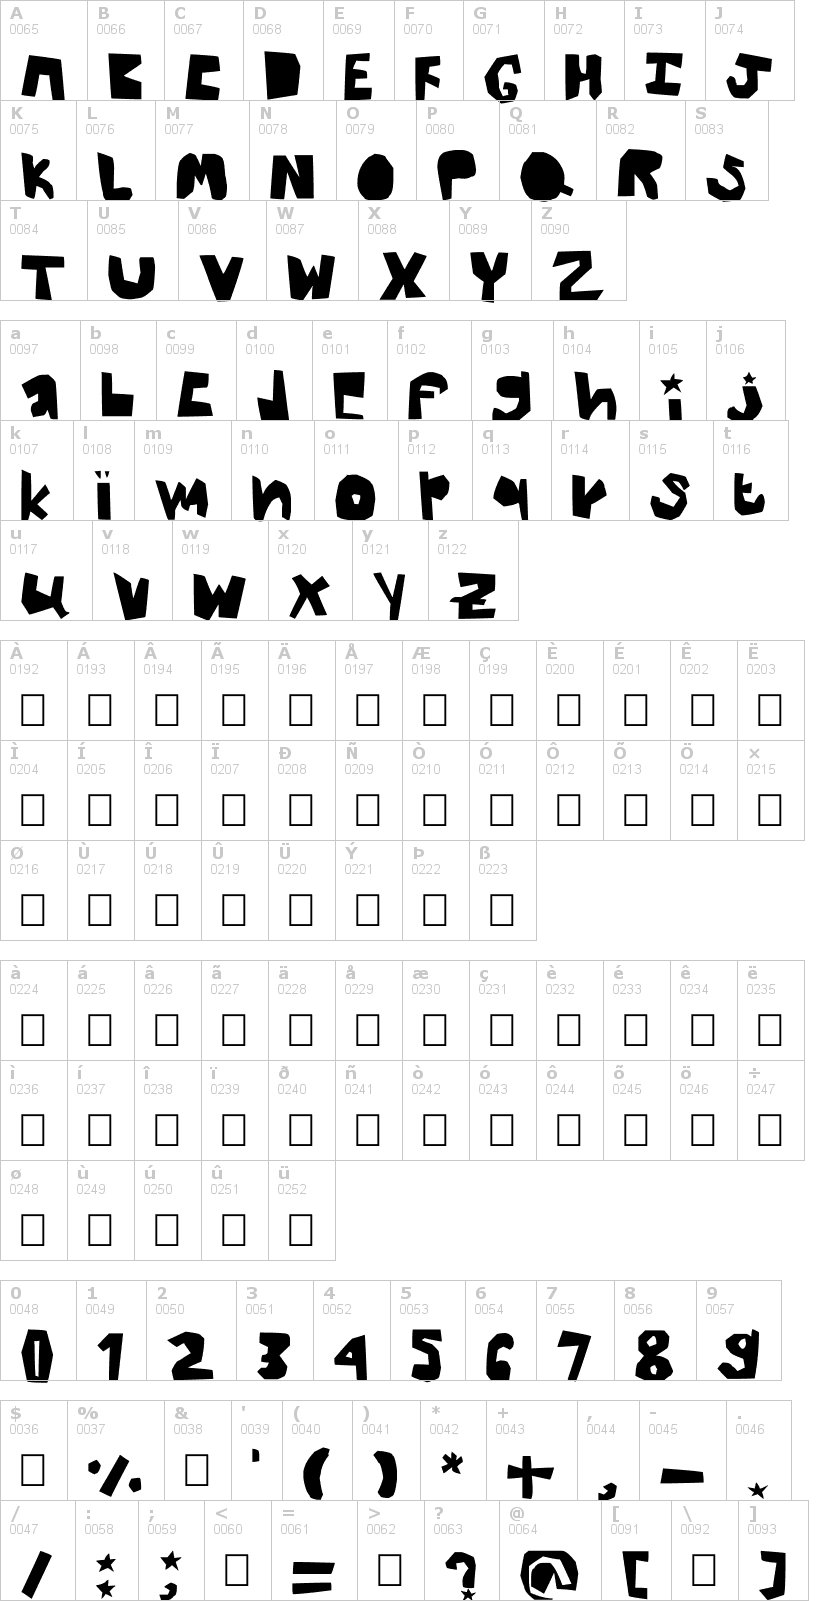 Lettere dell'alfabeto del font thick con le quali è possibile realizzare adesivi prespaziati